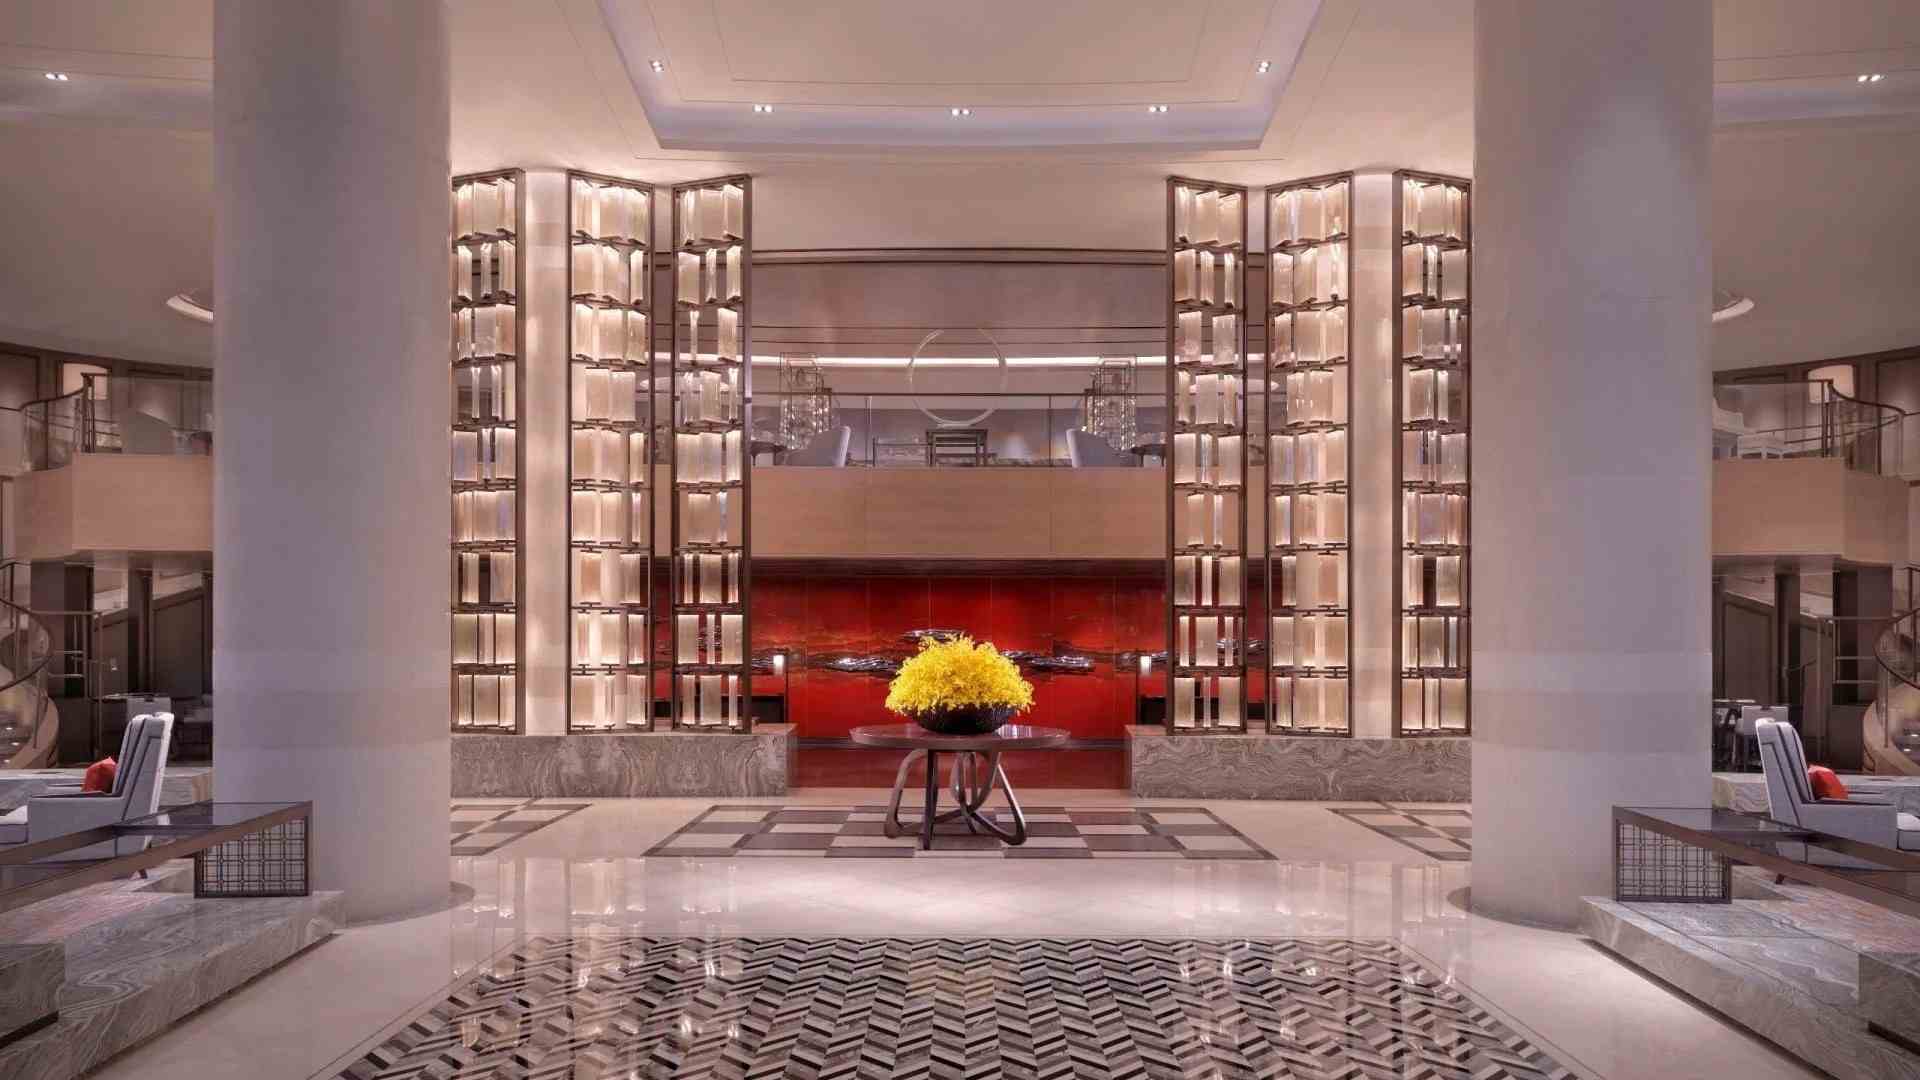 2022深圳君悦酒店·主席楼·粤菜美食餐厅,整个餐廳全部都是房間， 沒有...【去哪儿攻略】